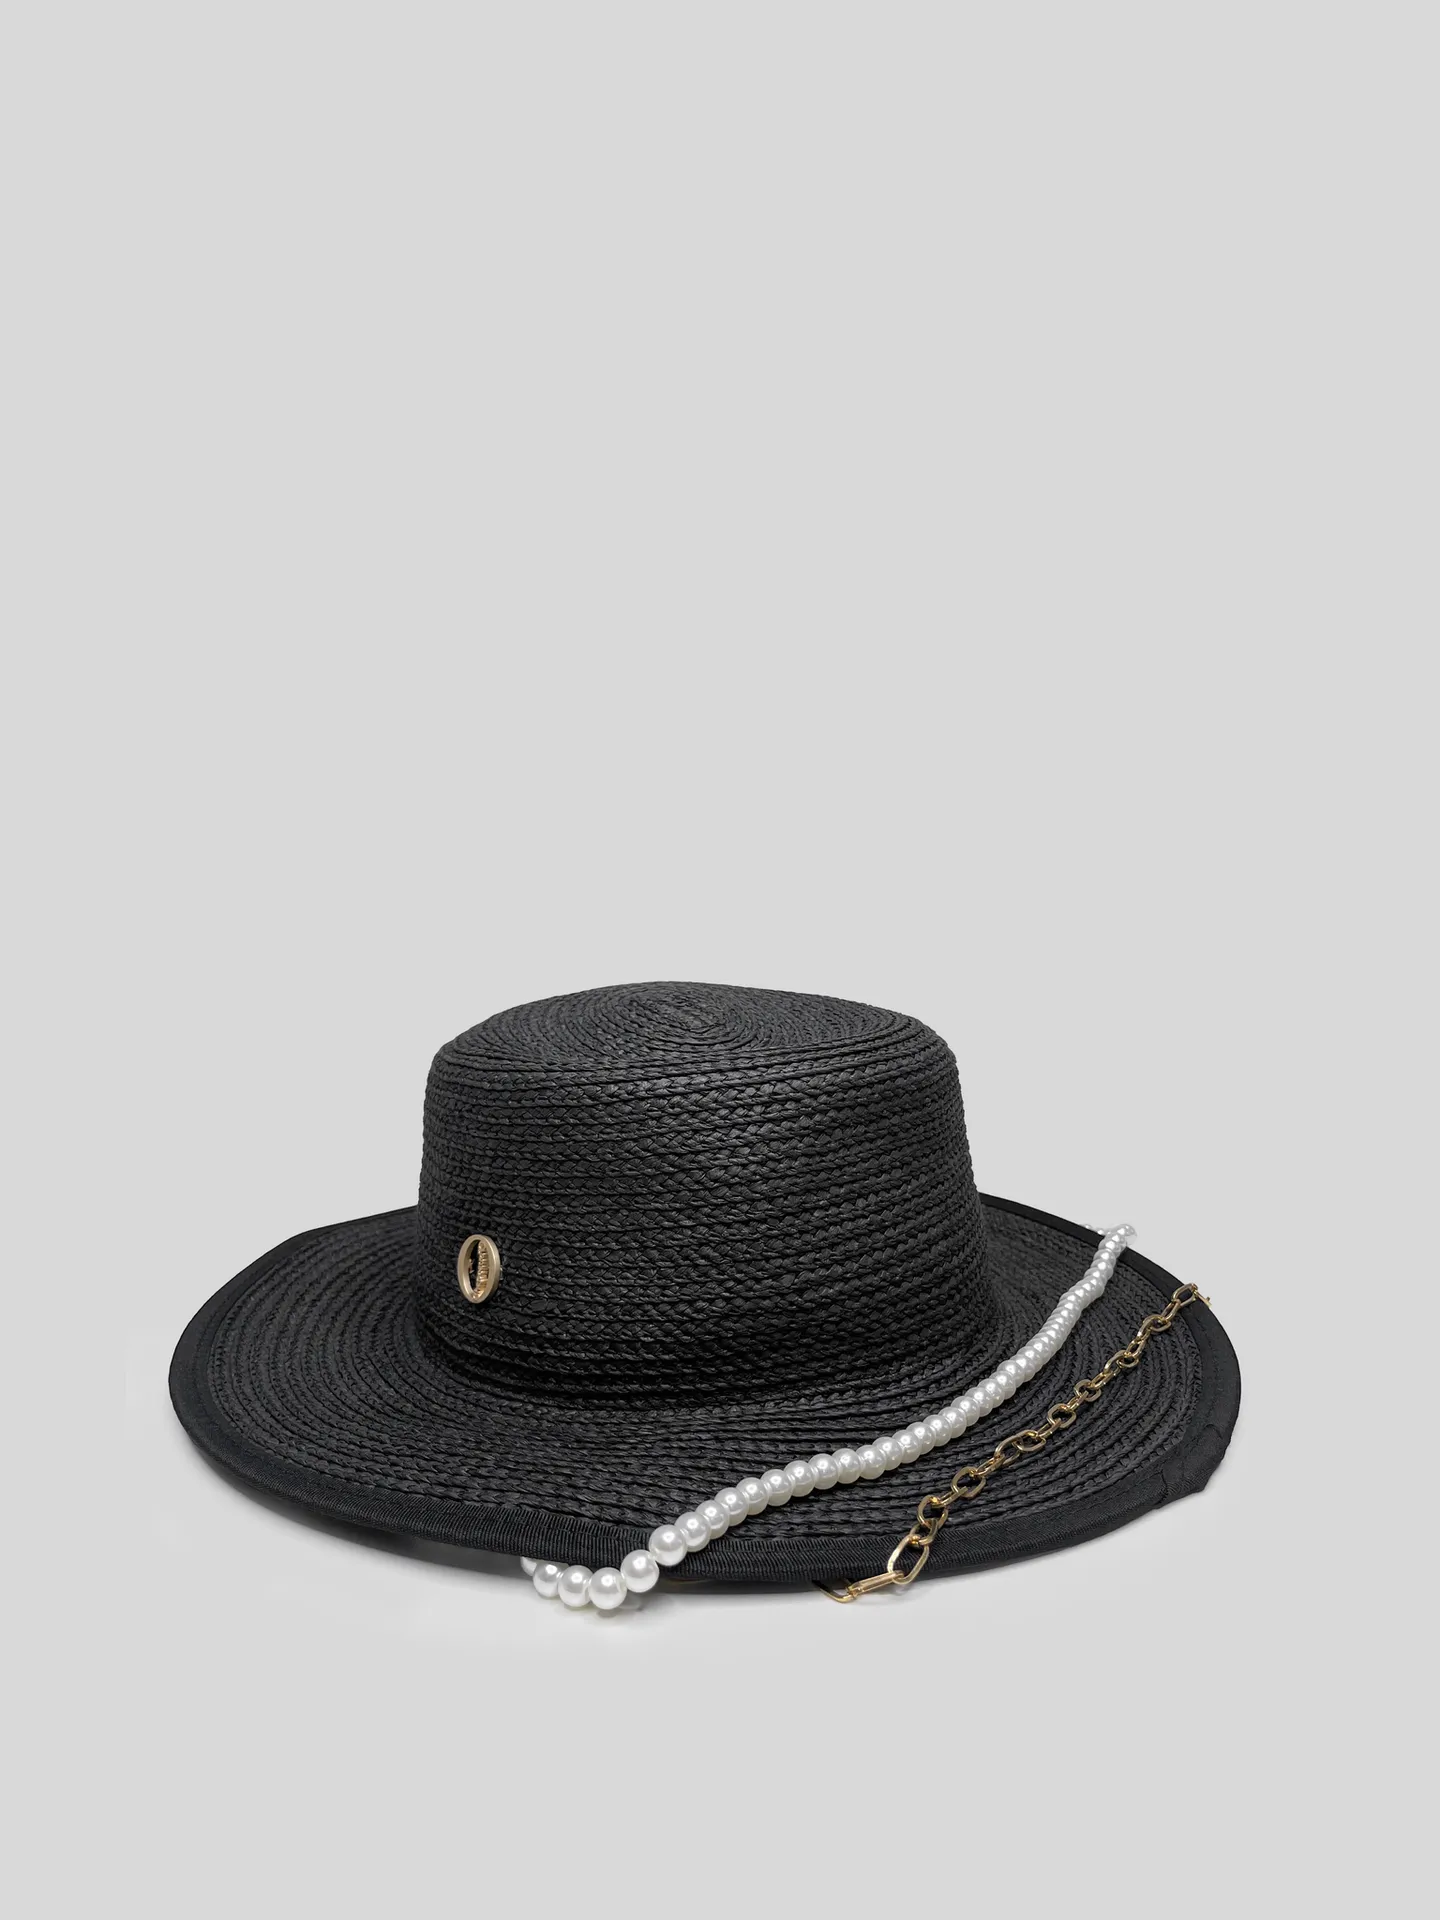 Шляпа соломенная черная с металлической вставкой и комбинированной цепочкой купить